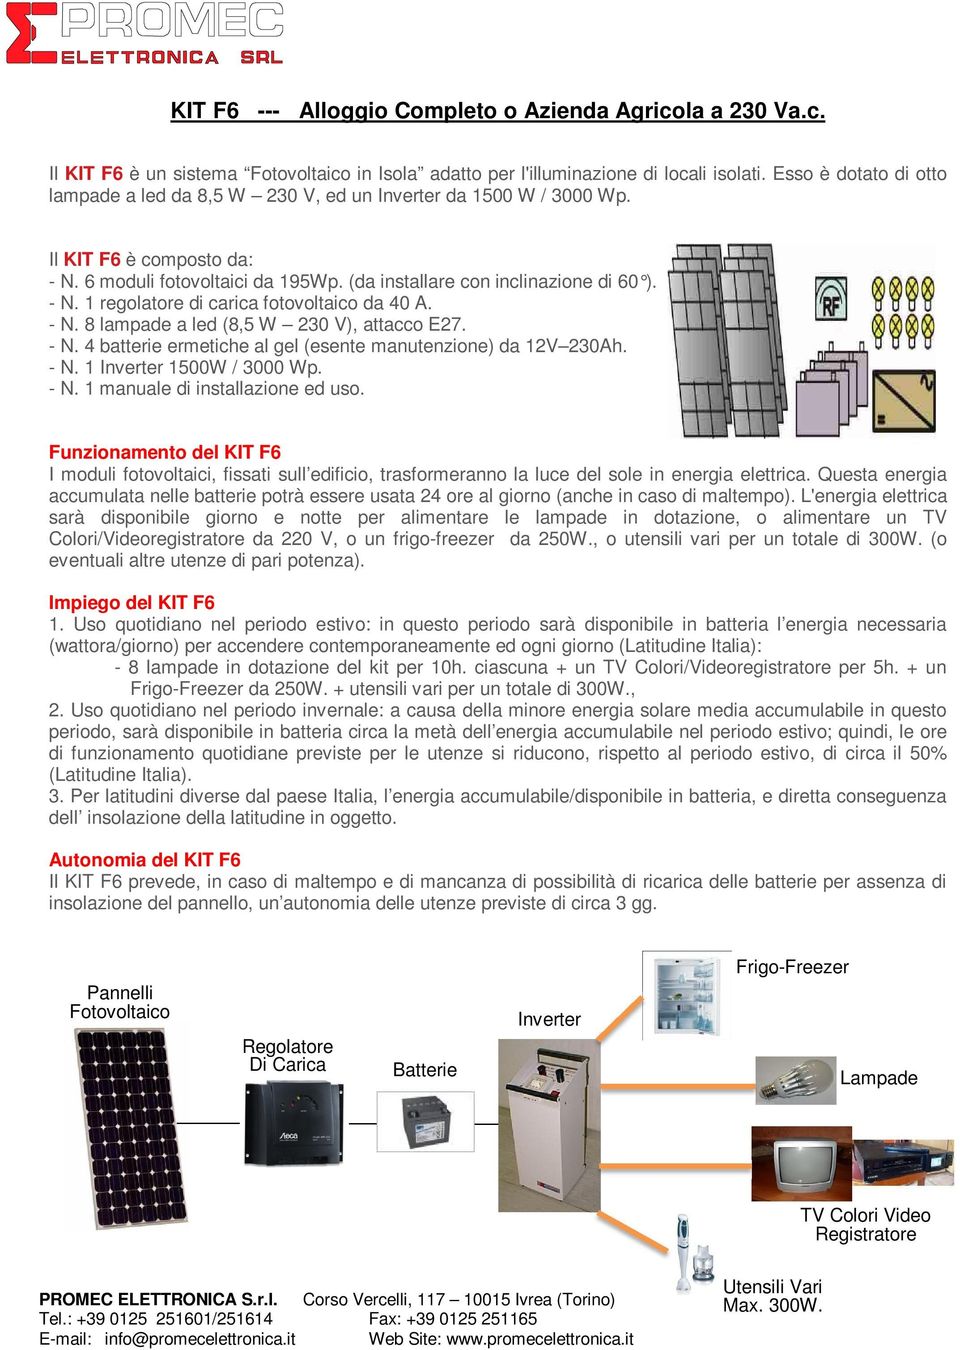 - N. 8 lampade a led (8,5 W 230 V), attacco E27. - N. 4 batterie ermetiche al gel (esente manutenzione) da 12V 230Ah. - N. 1 Inverter 1500W / 3000 Wp. - N. 1 manuale di installazione ed uso.